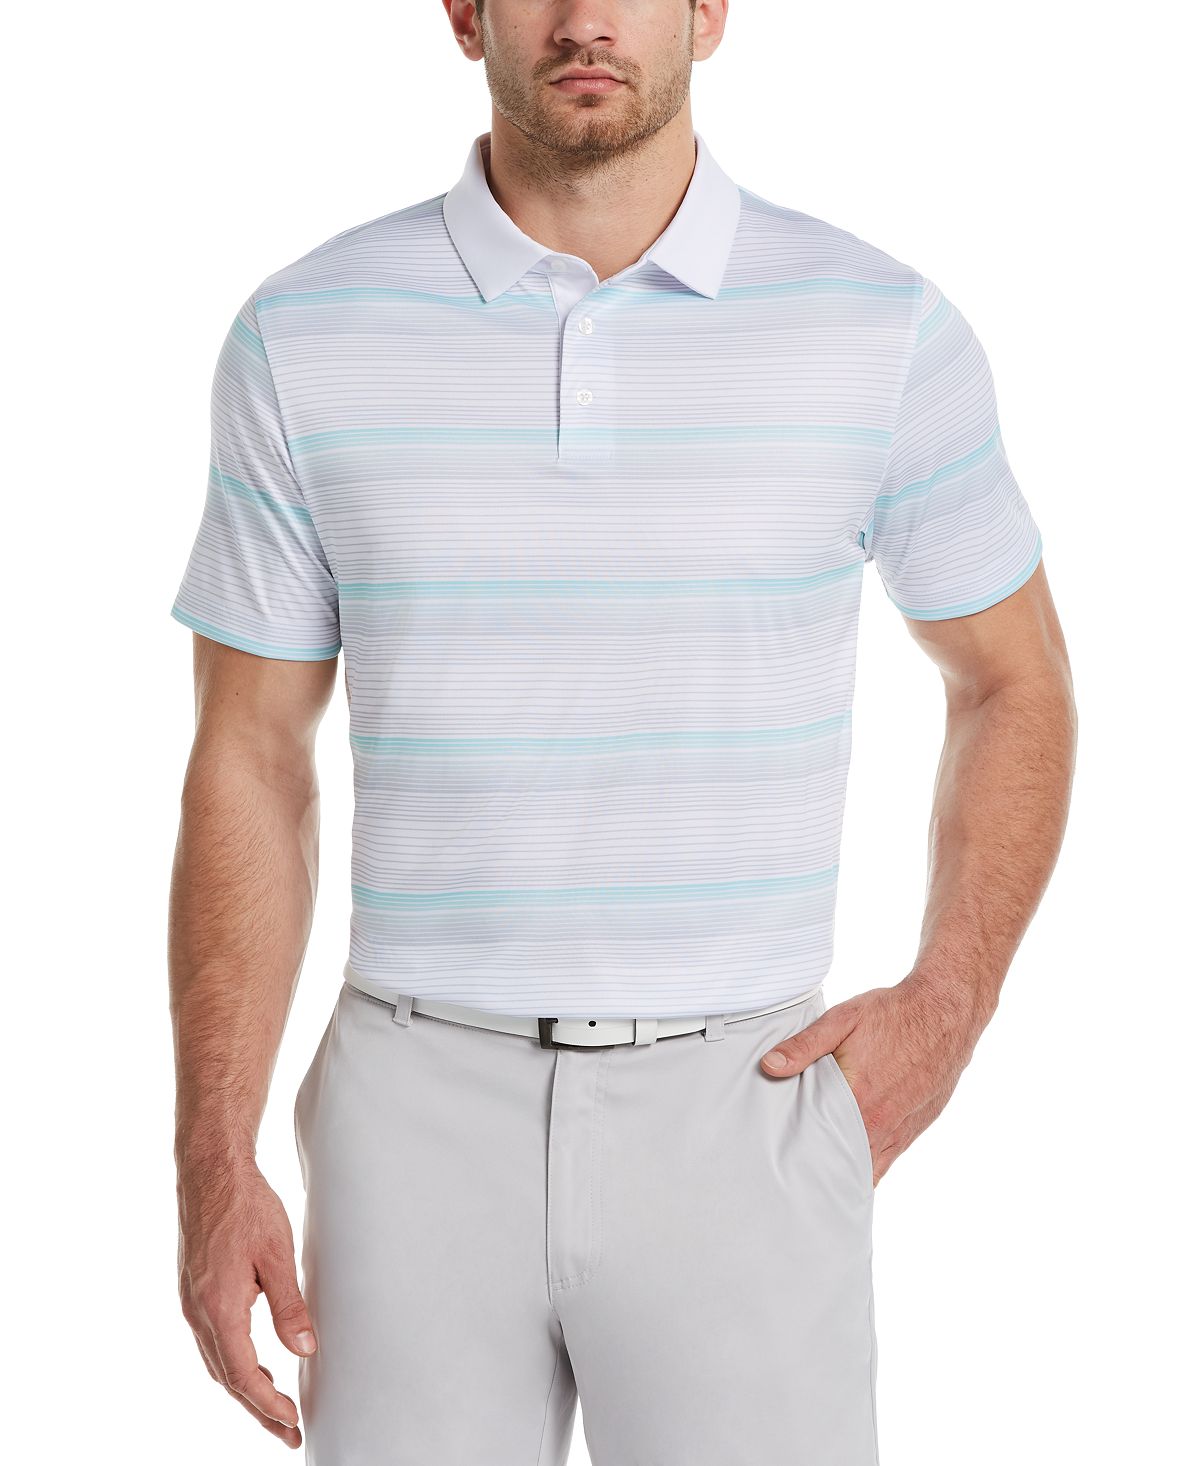 Pga Tour Gradient-stripe Golf Polo Bright White/Blue